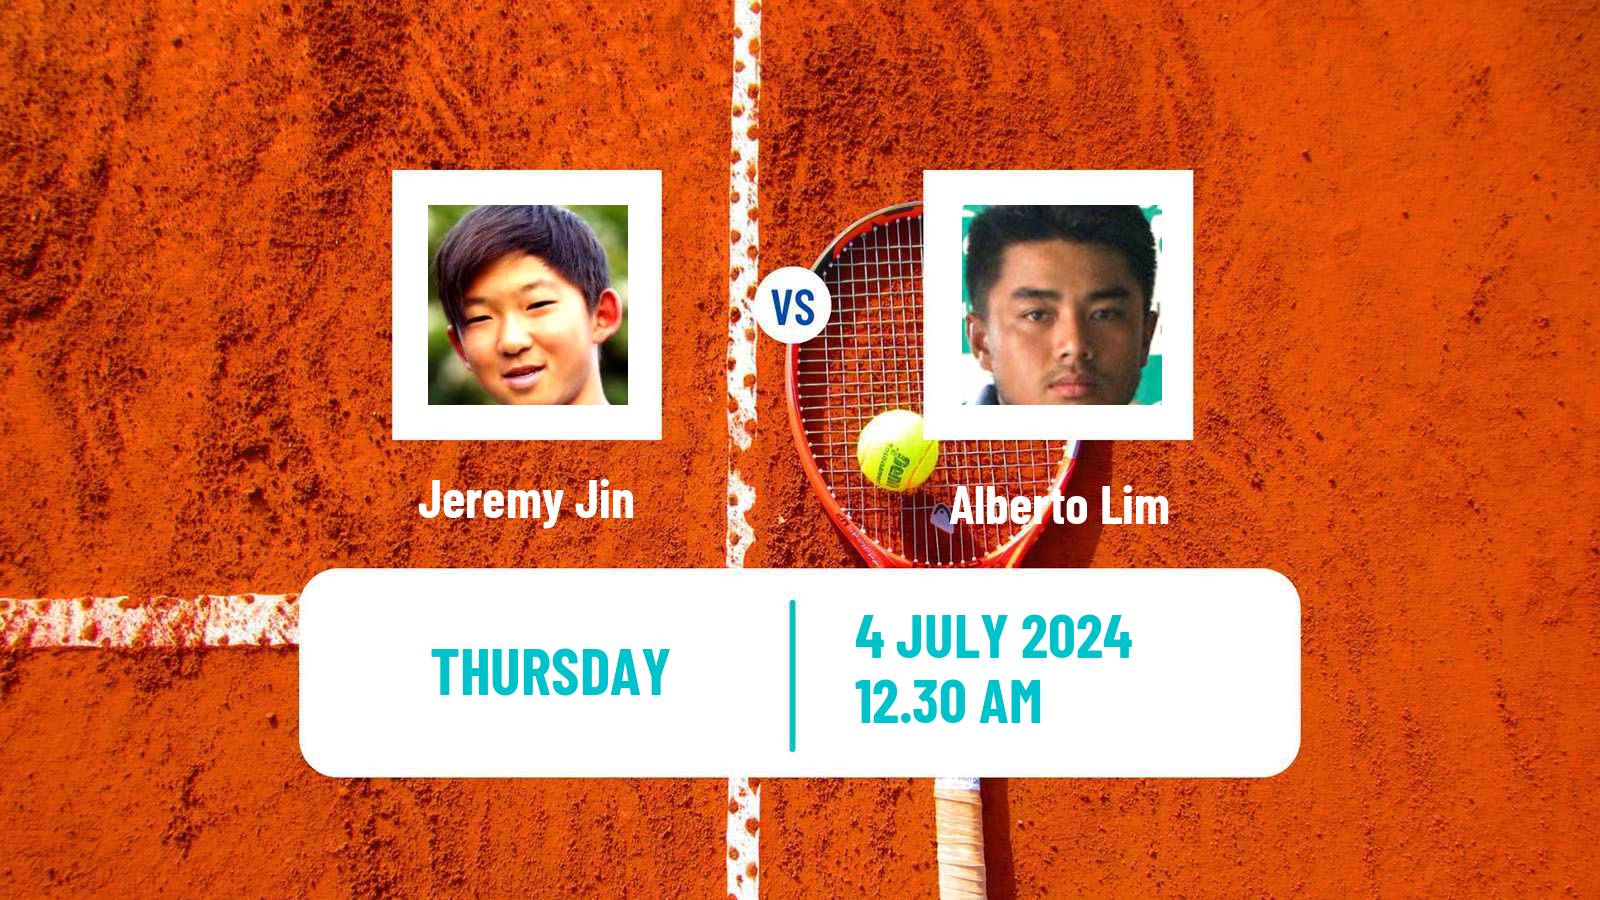 Tennis ITF M15 Tianjin 2 Men Jeremy Jin - Alberto Lim